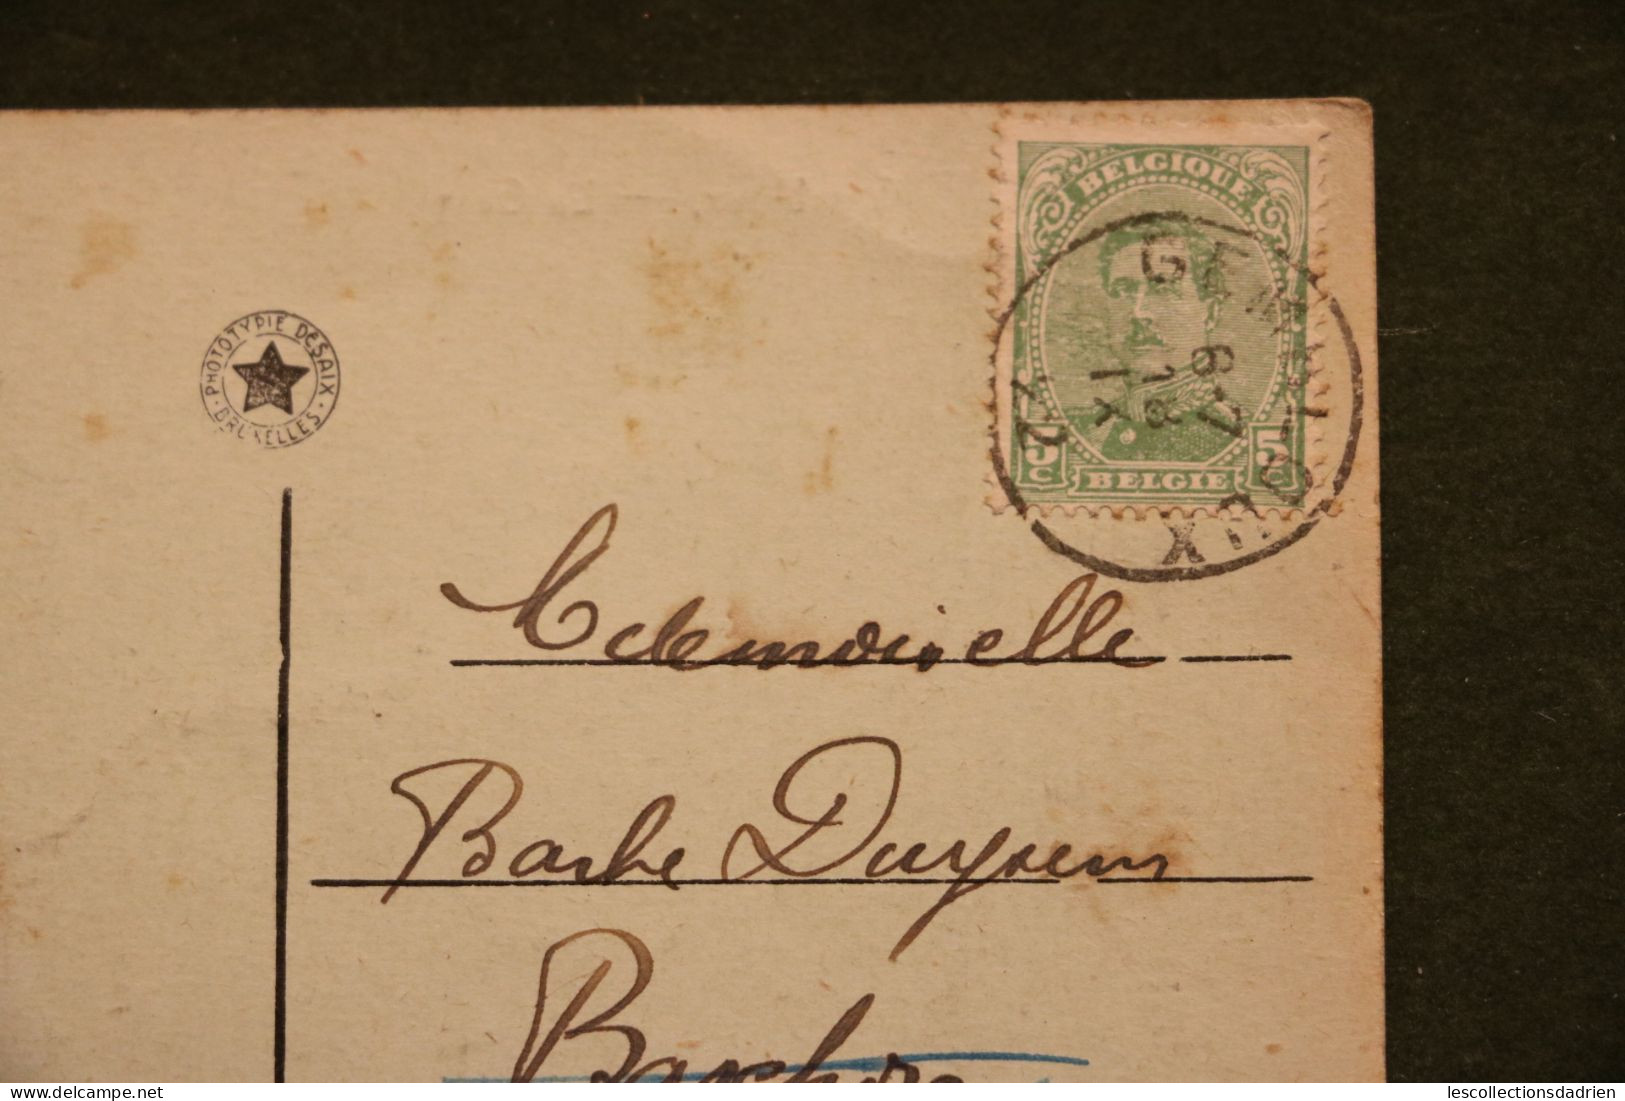 Carte postale gare de Gembloux - station oblitération 1918 - voiture